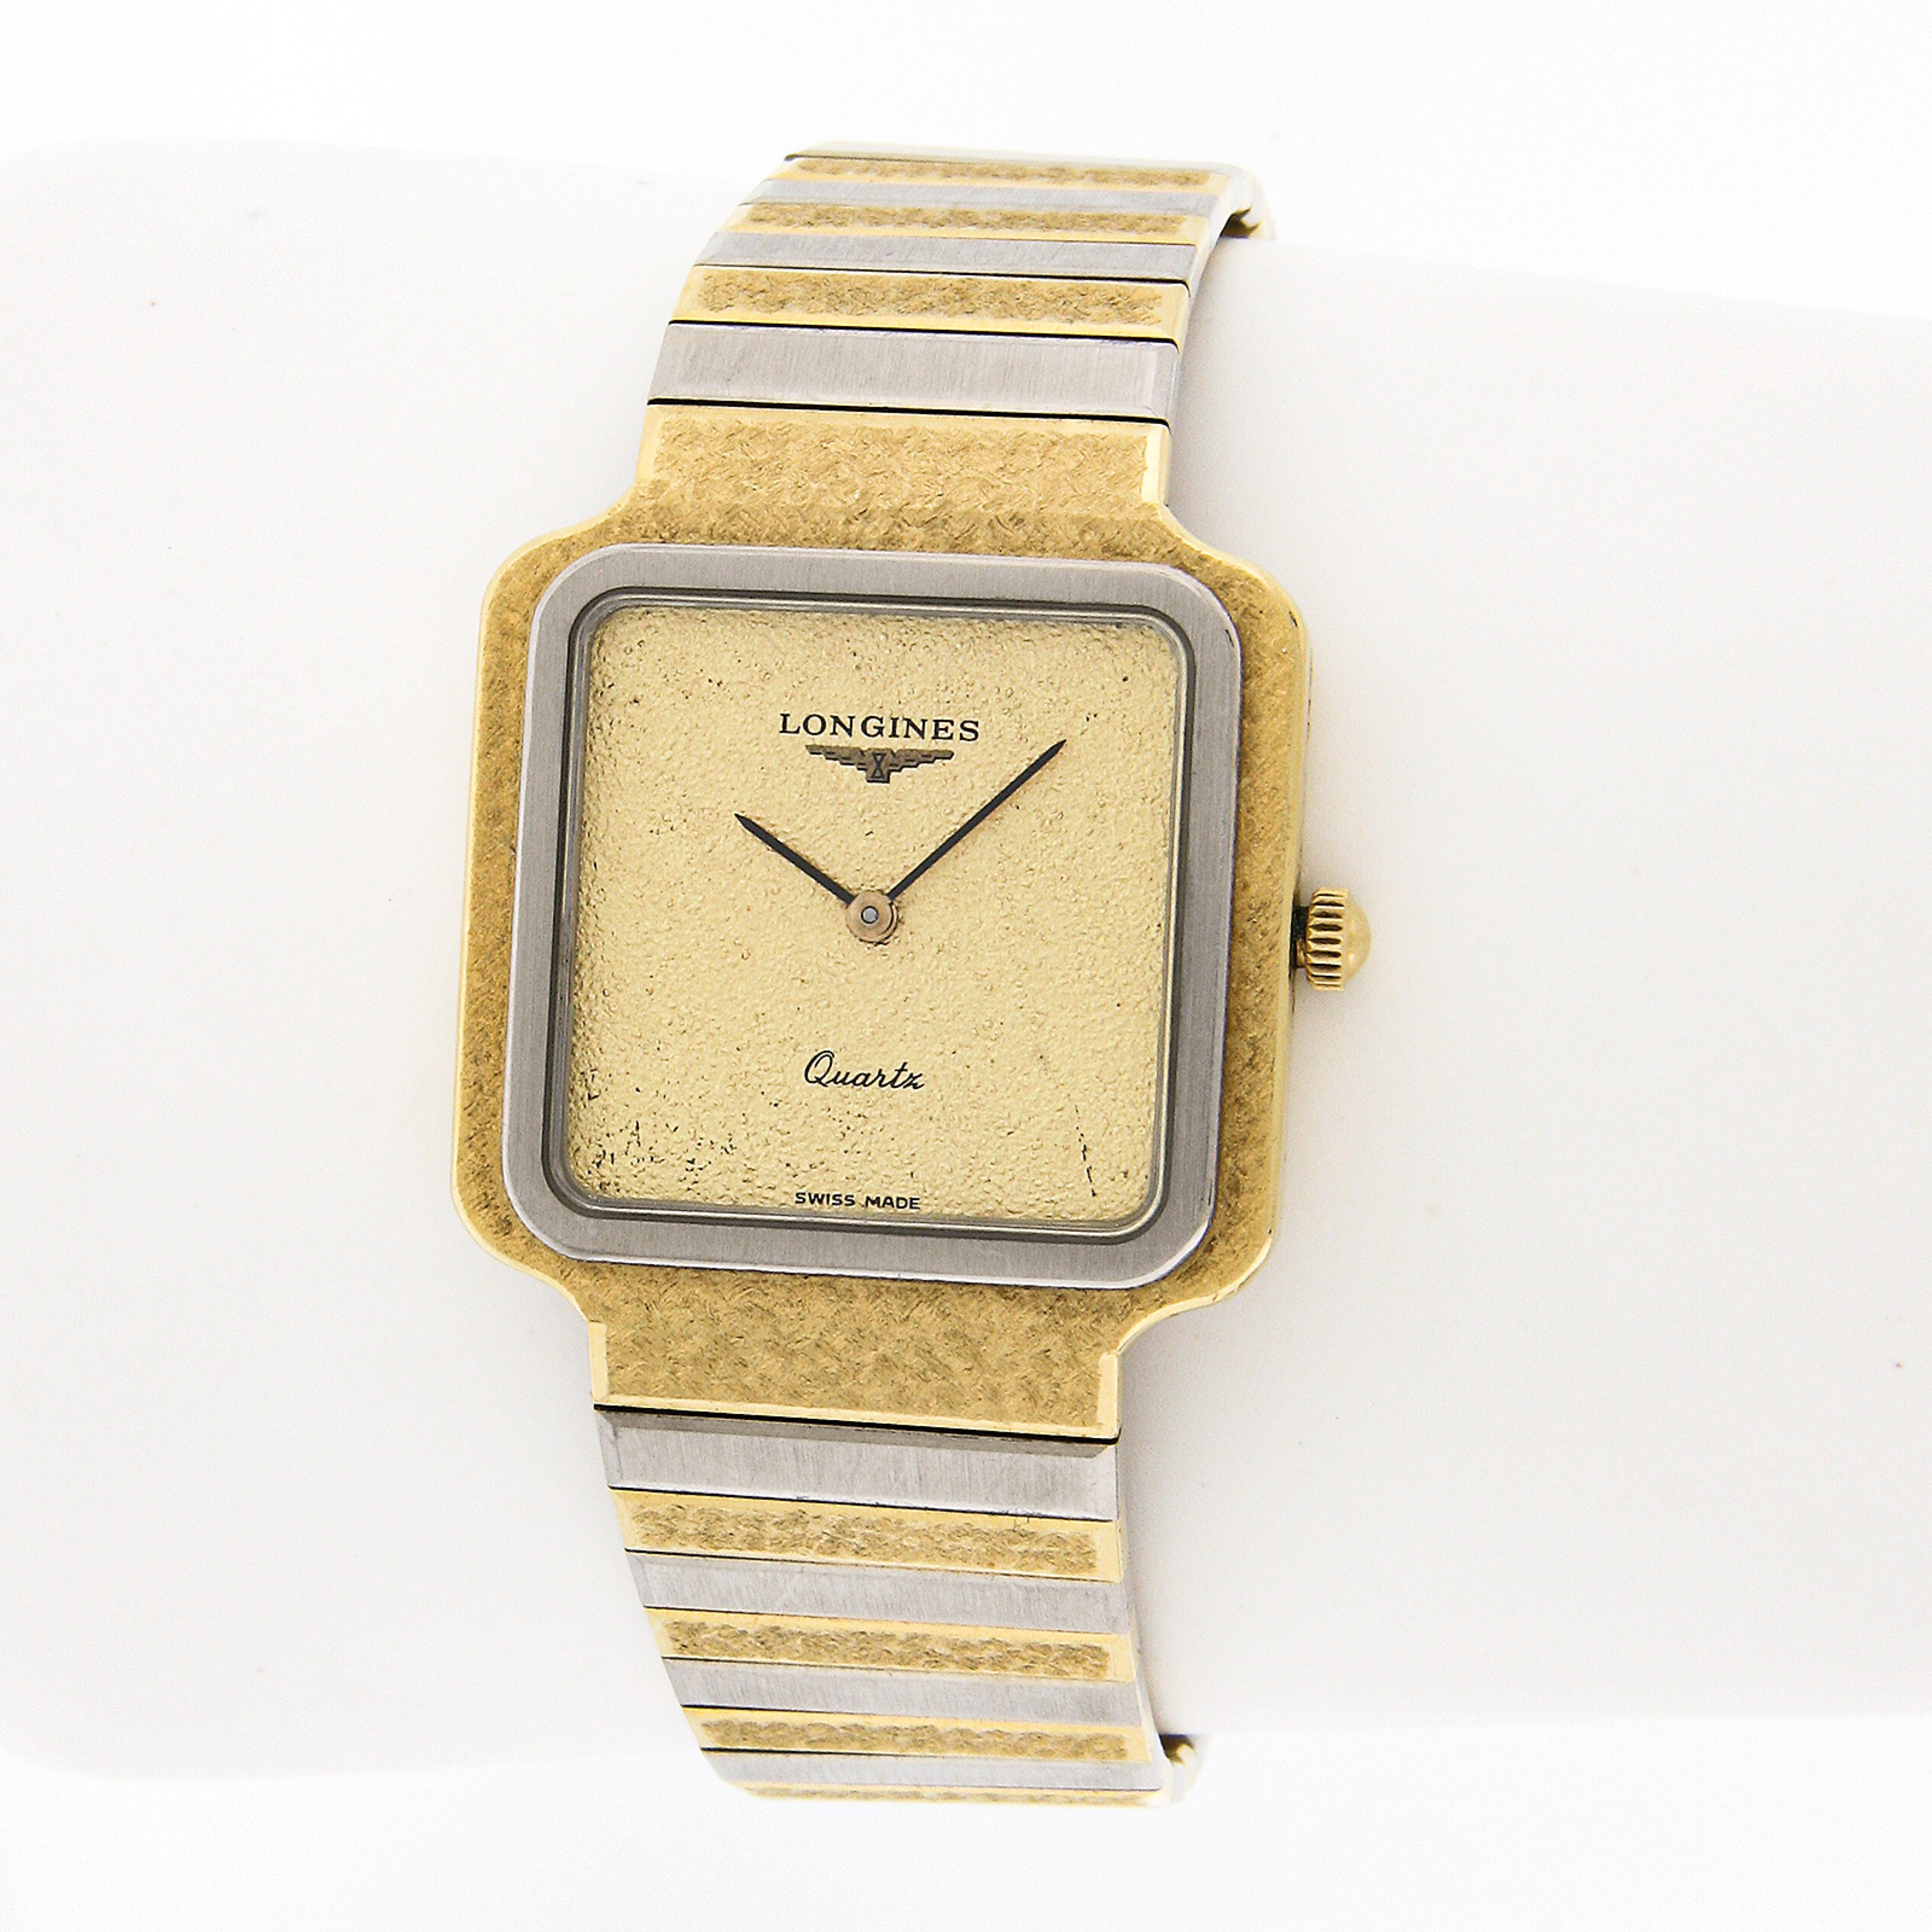 Diese elegante und luxuriöse Vintage Longines Armbanduhr verfügt über ein 28mm breites, massives 18k Goldgehäuse in quadratischer Form. Das Gehäuse hat eine einzigartige gehämmerte Oberfläche mit einer glatten und glatten Weißgoldlünette. Auch das